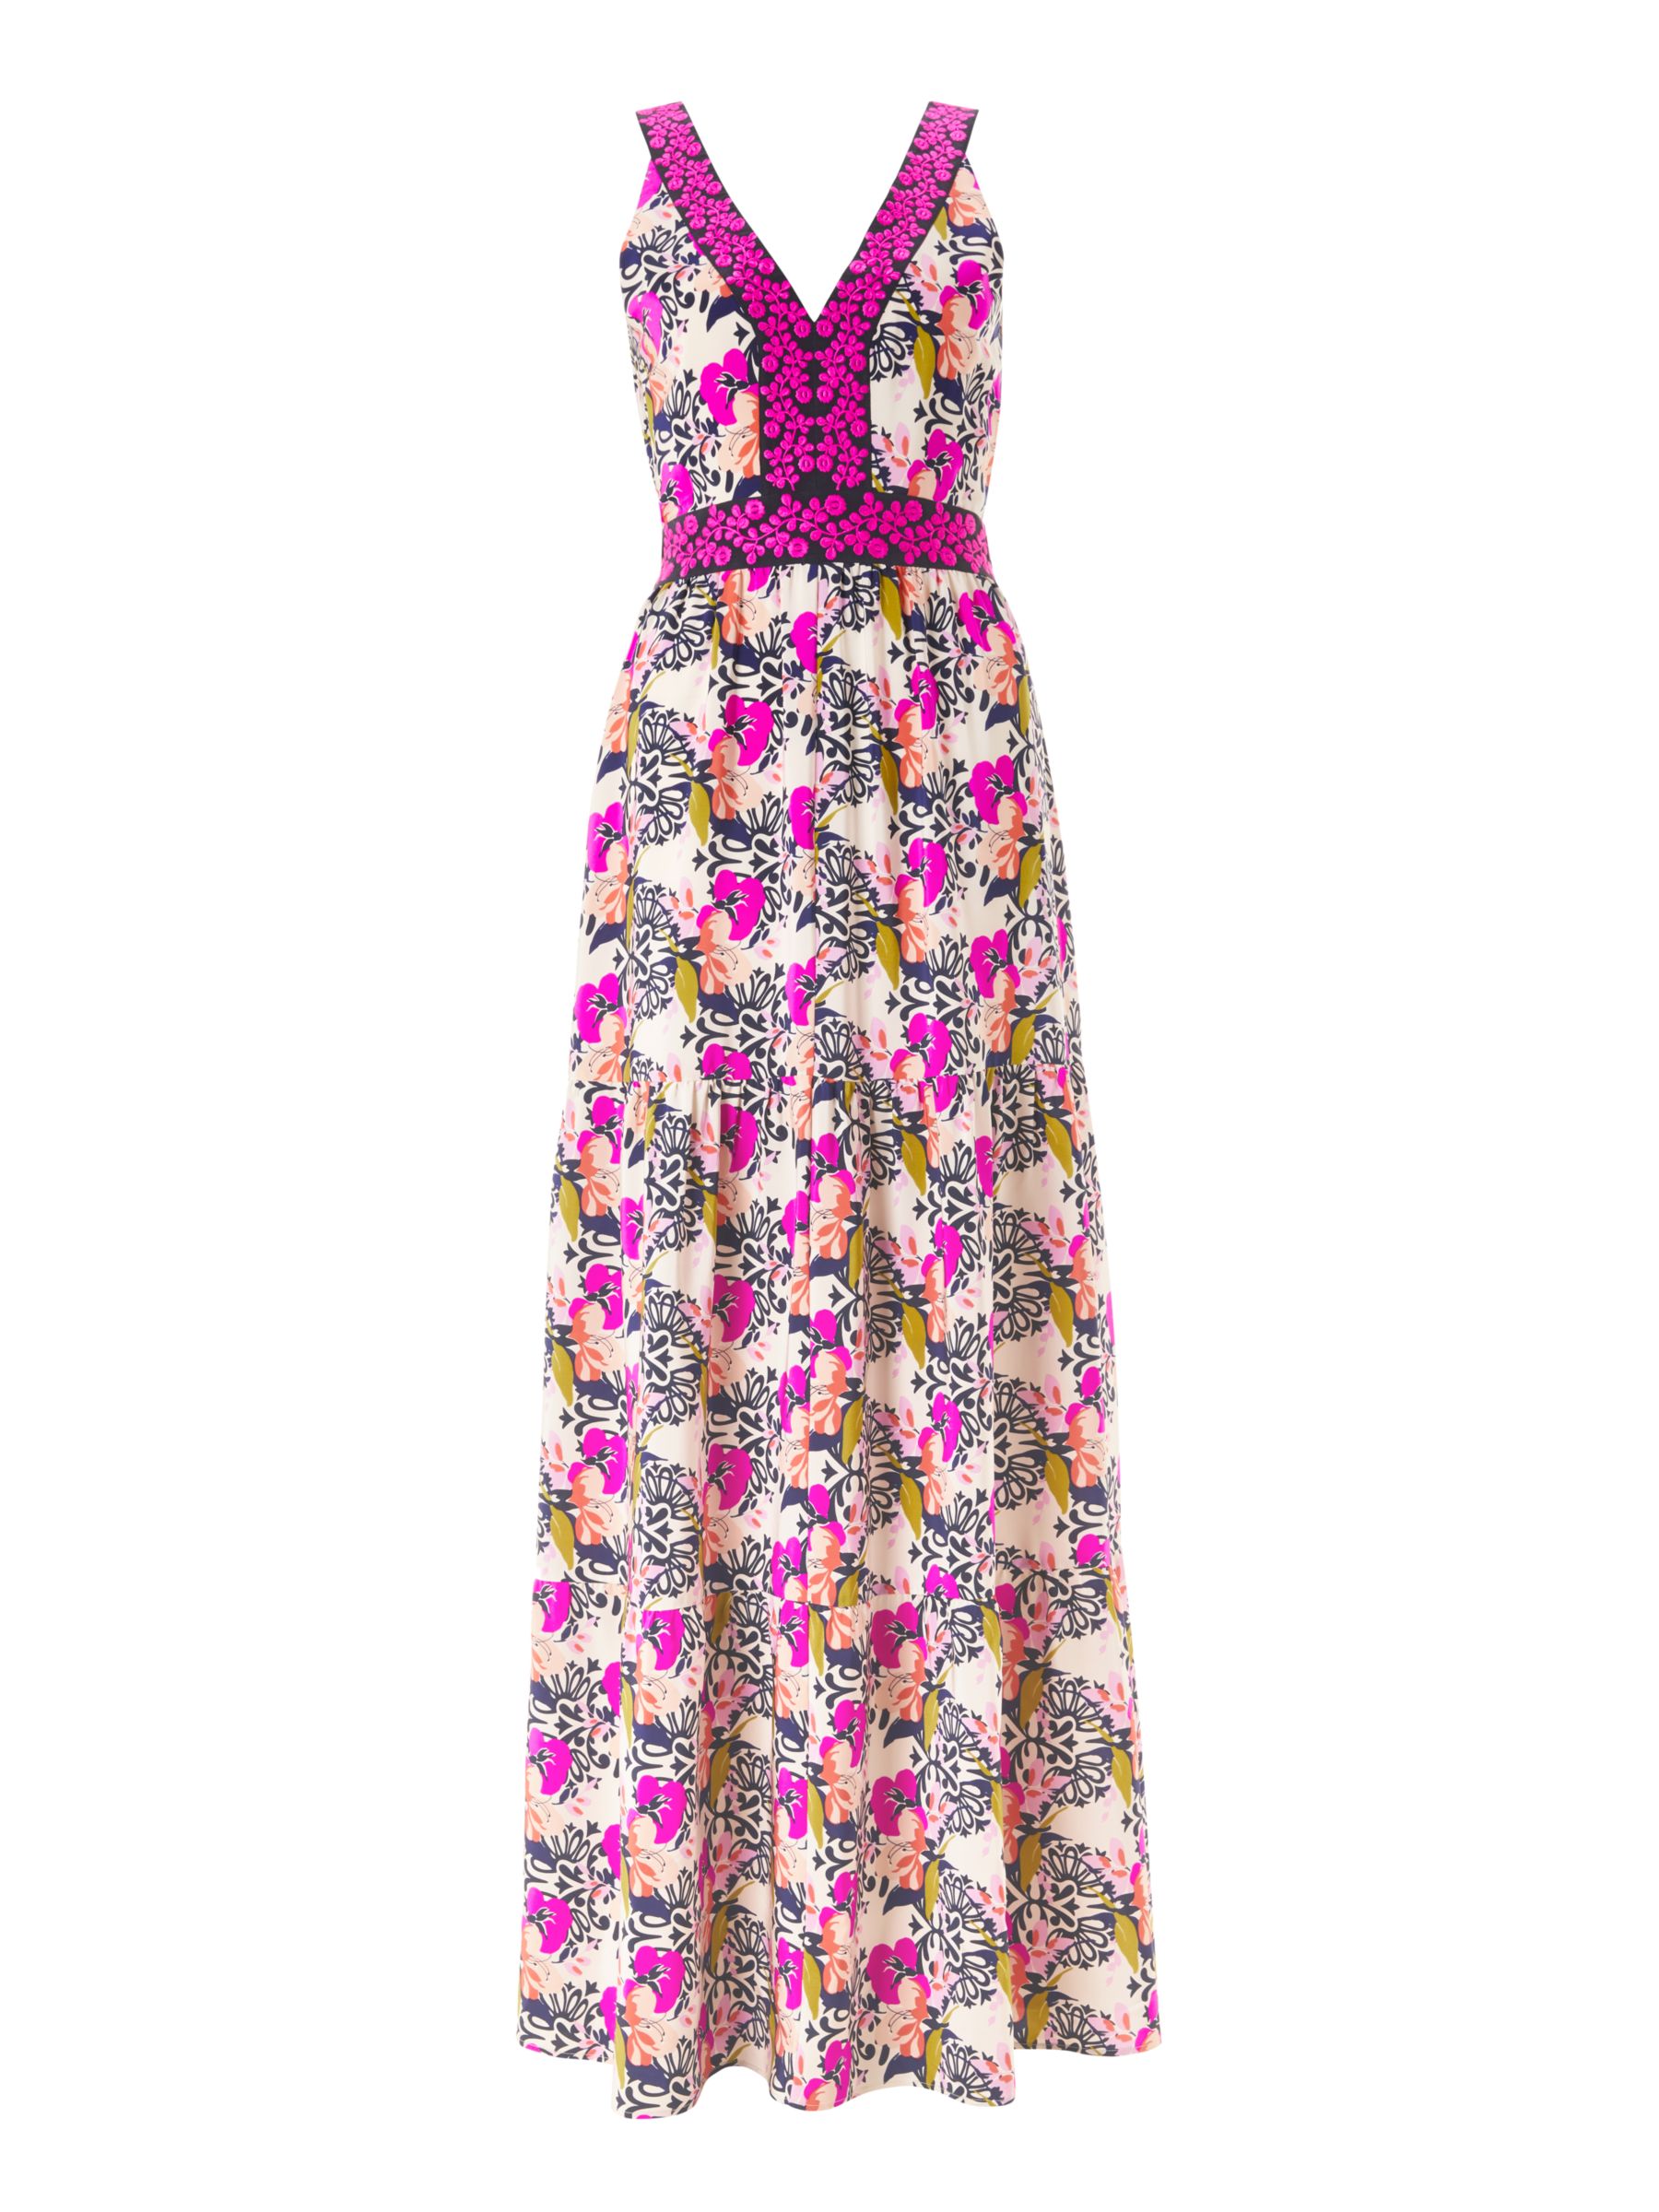 Boden Loretta Maxi Dress, Shocking Pink/Wild Bloom Geo, 8